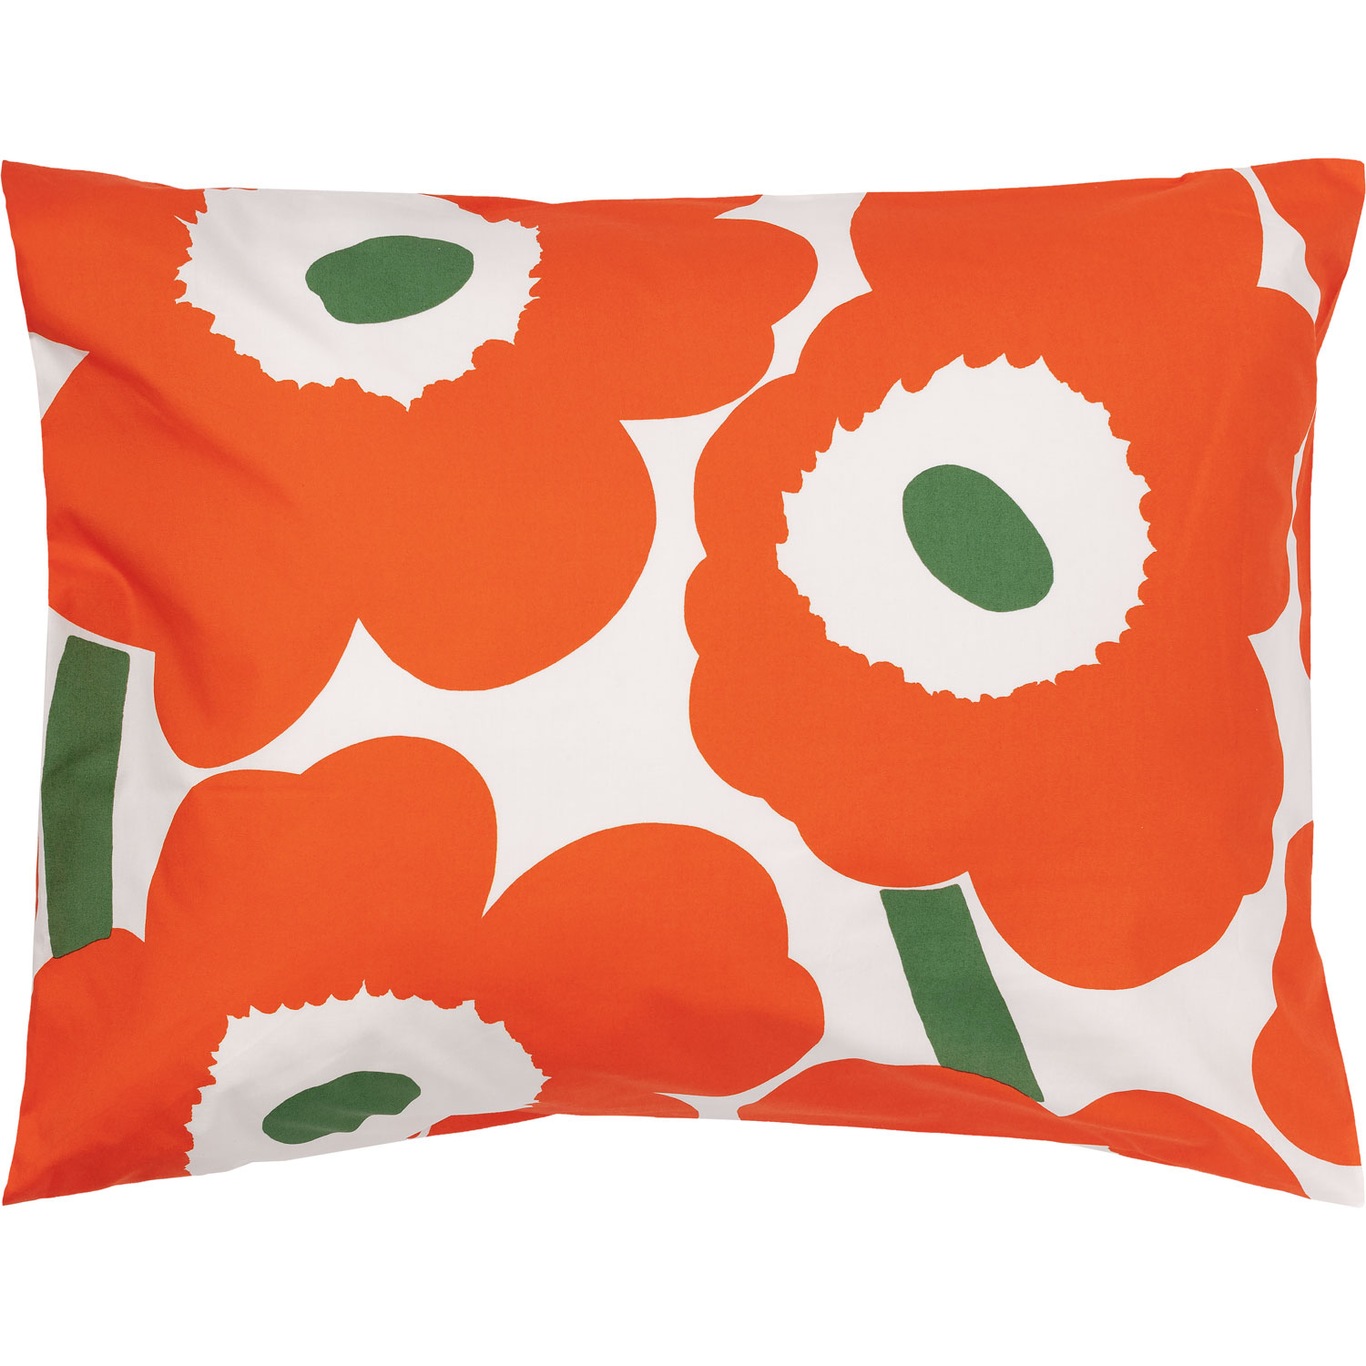 Unikko Tyynynpäällinen 50x60 cm, Luonnonvalkoinen / Oranssi / Vihreä